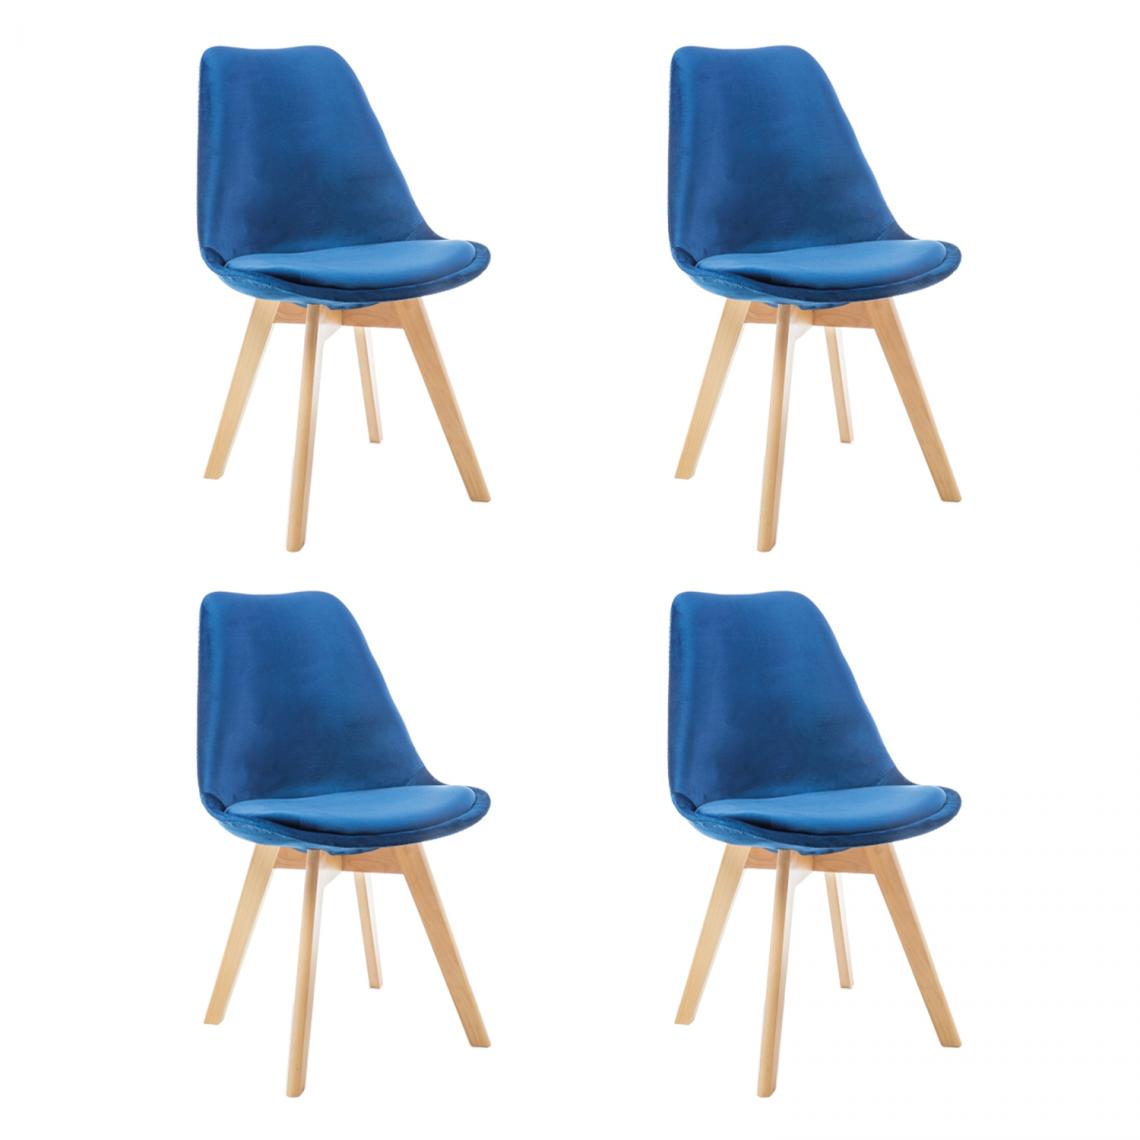 Hucoco - LEONIE - Lot de 4 chaises modernes avec pieds en bois - Dimensions : 86x52x48 cm - Style scandinave - Bleu - Chaises